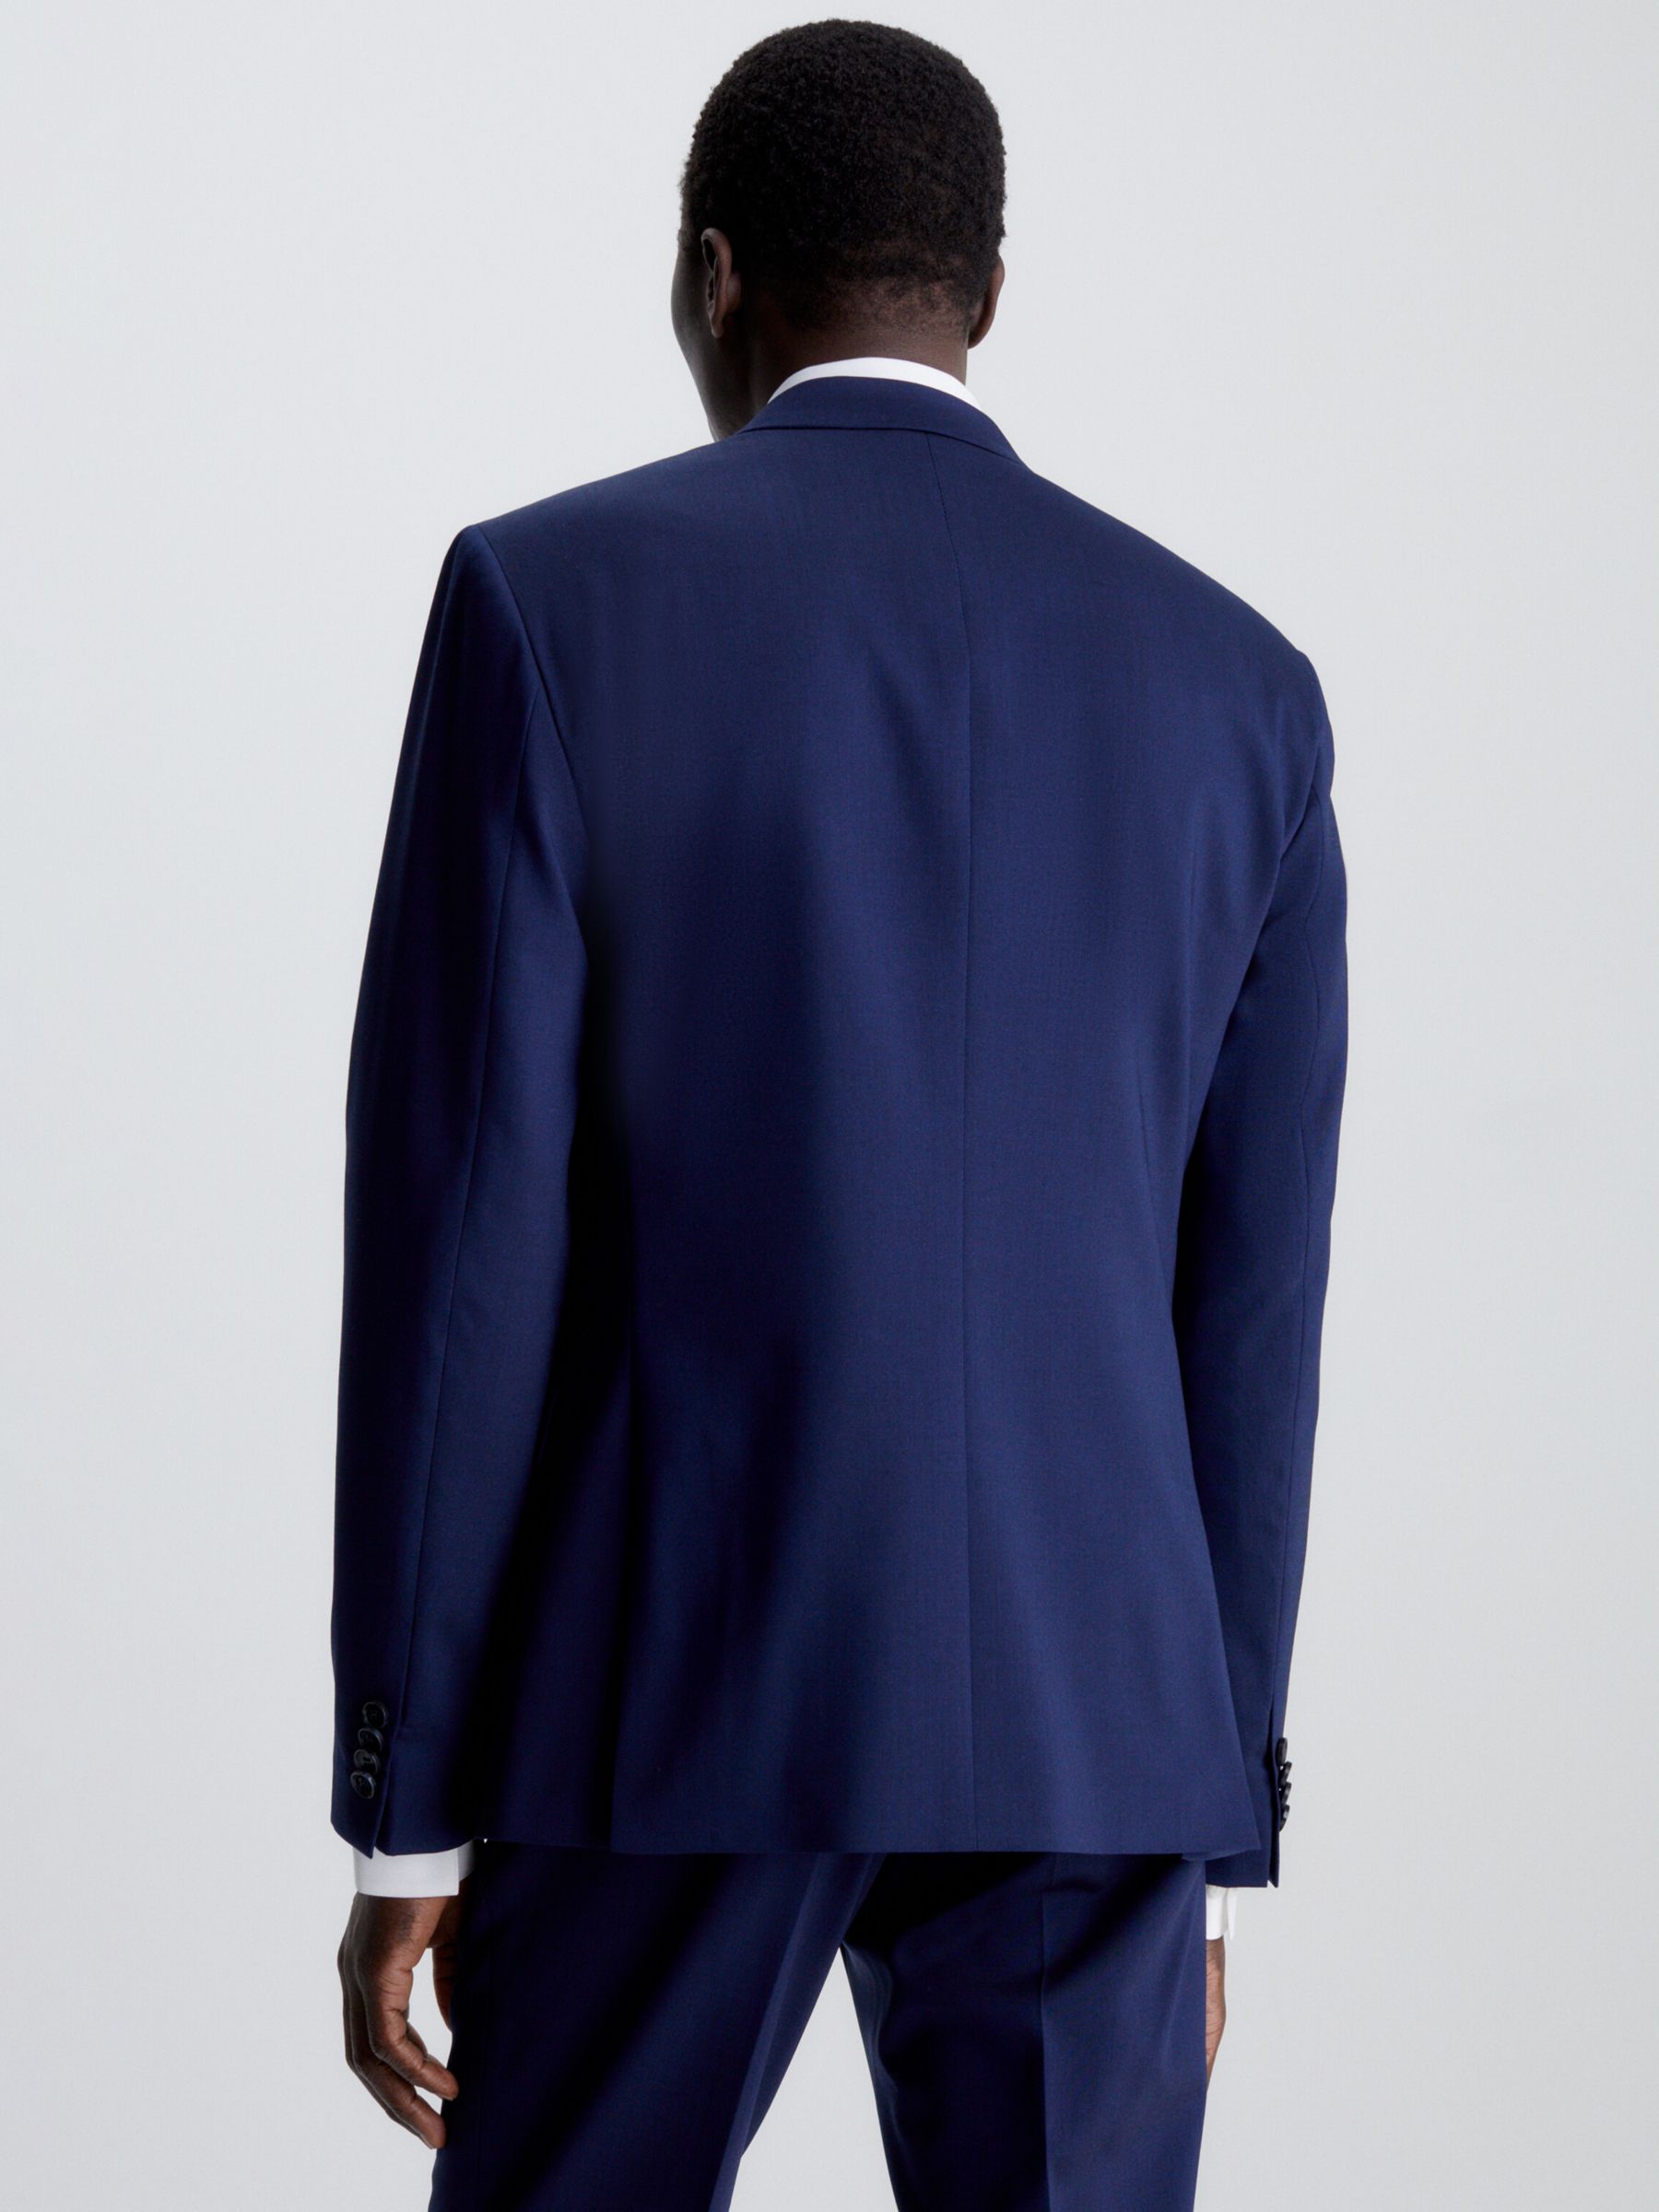 Calvin Klein Slim Fit Stretch Wool Blend Blazer, Ink Blue, 42